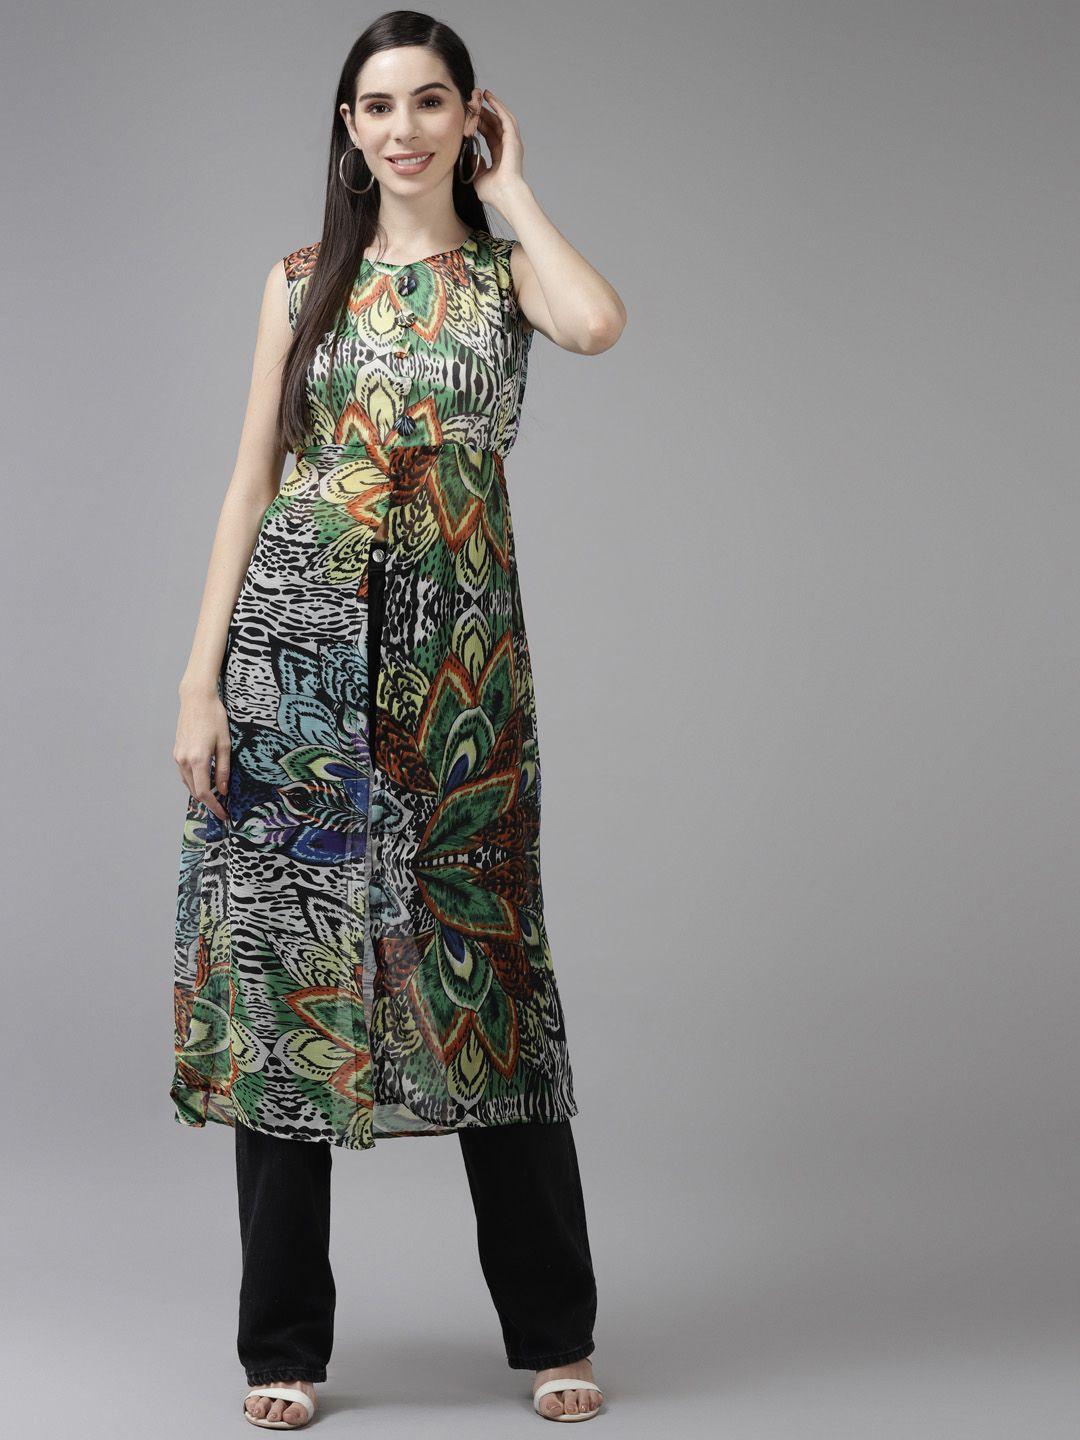 aarika-women-multicoloured-printed-georgette-longline-top